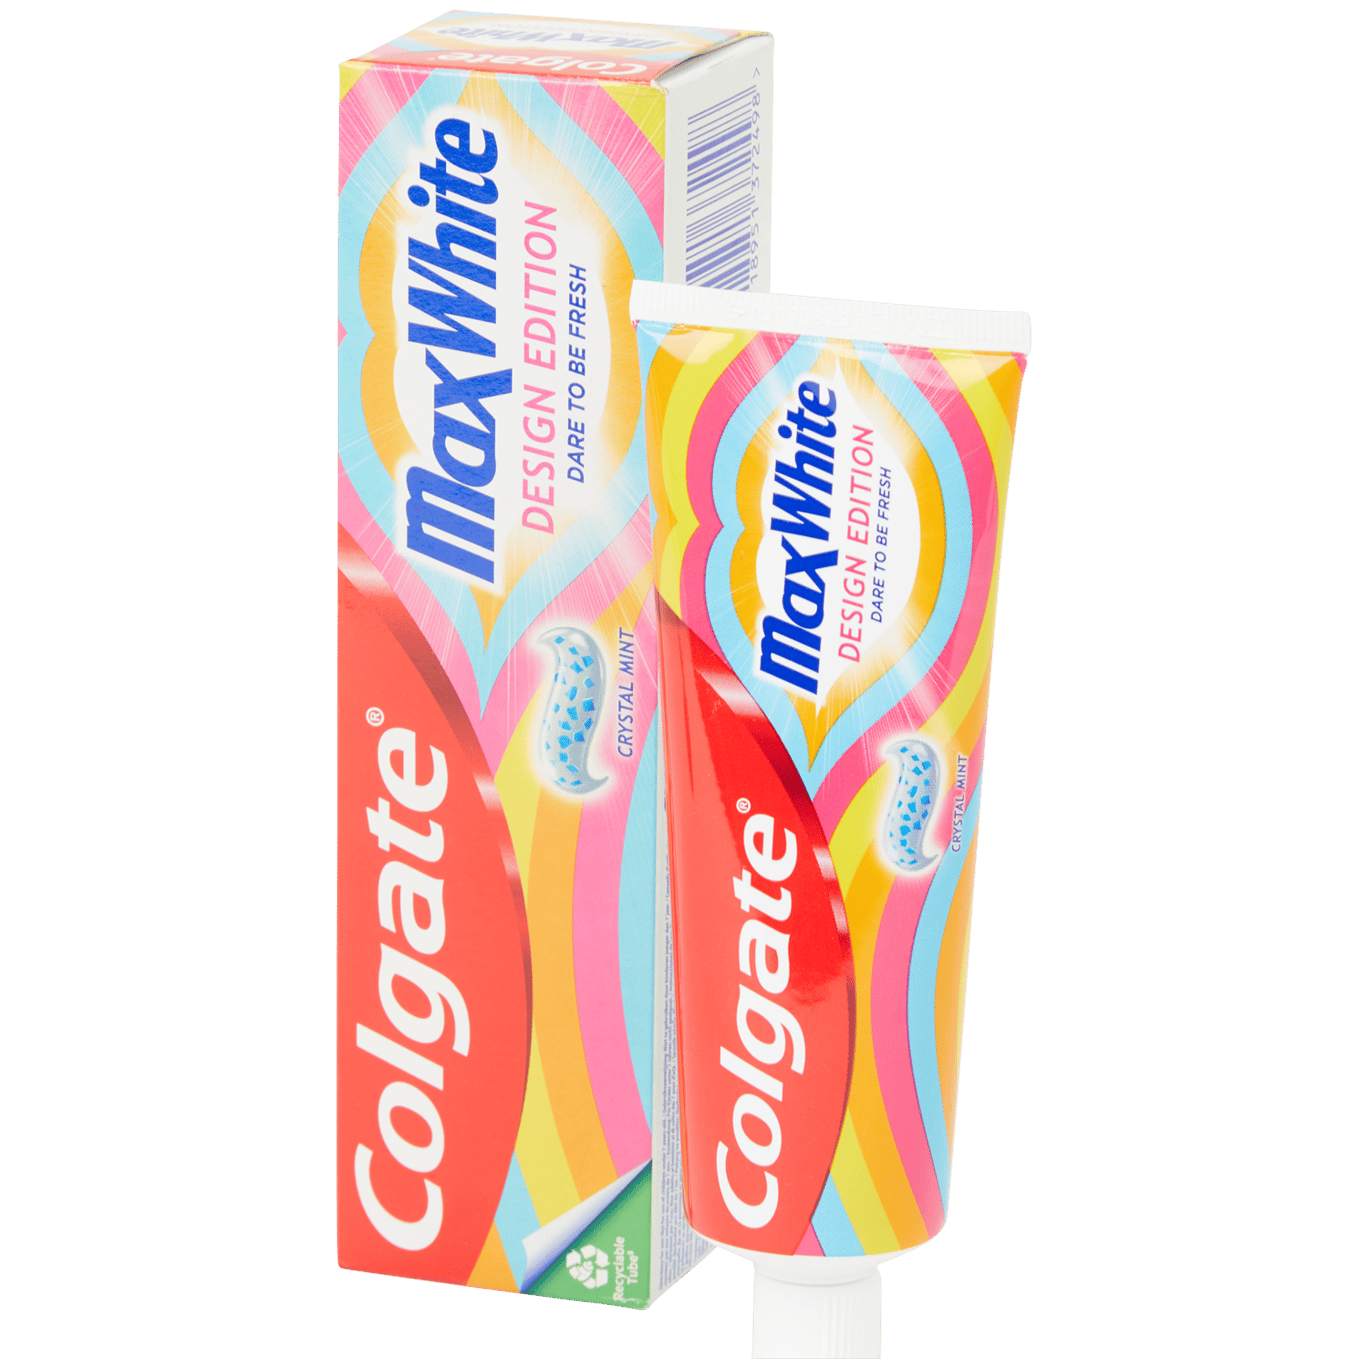 Dentifrice Colgate MaxWhite Max White Limited Edition